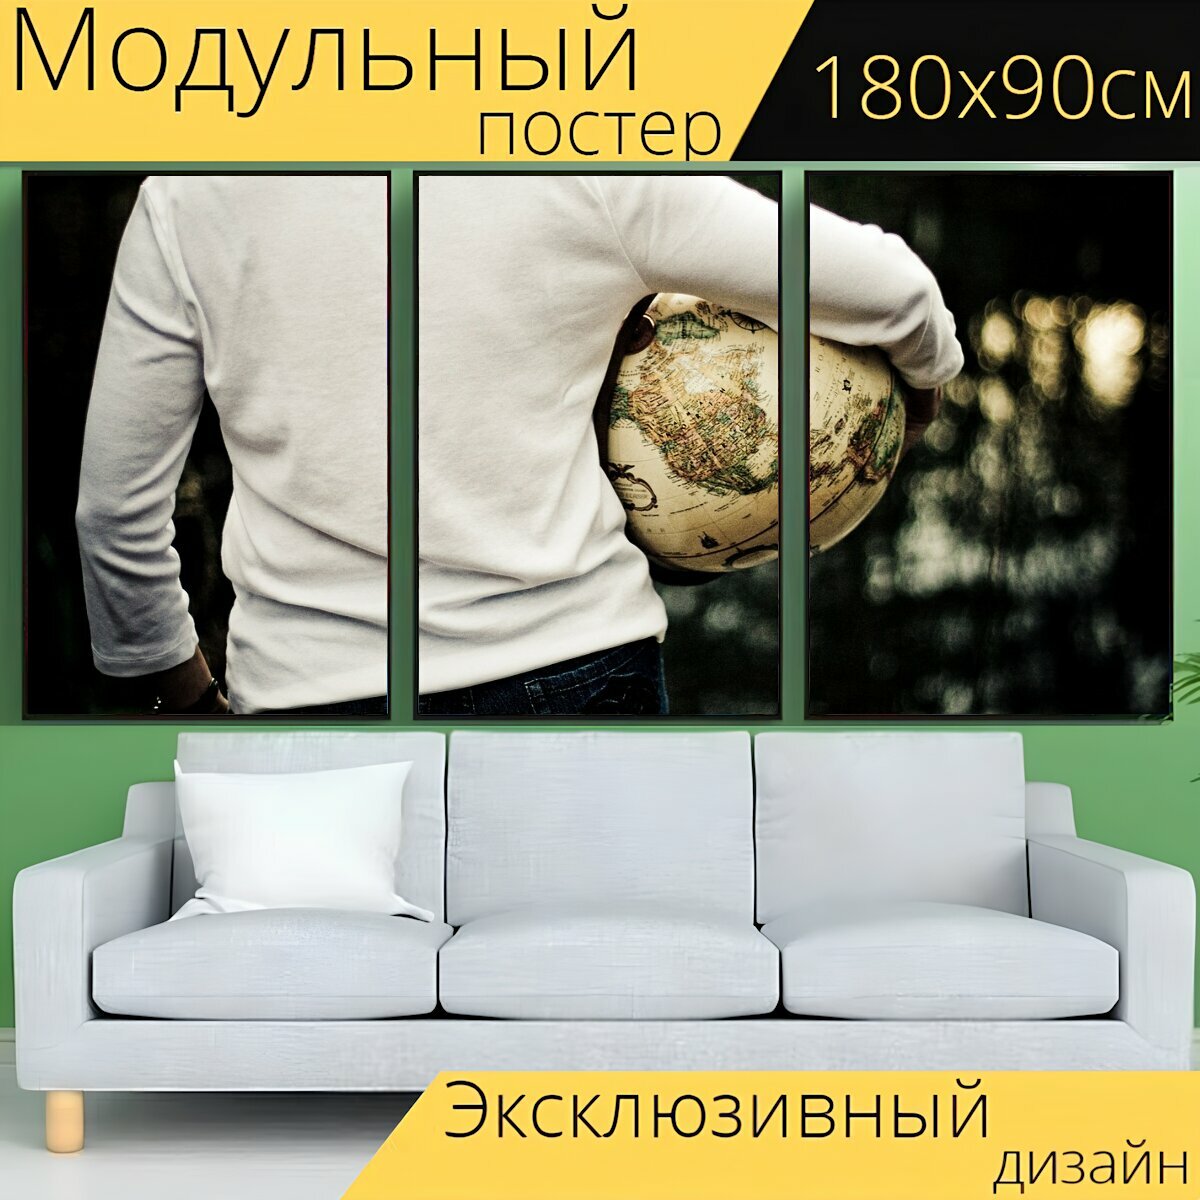 Модульный постер "Путешественник, мир, мяч" 180 x 90 см. для интерьера